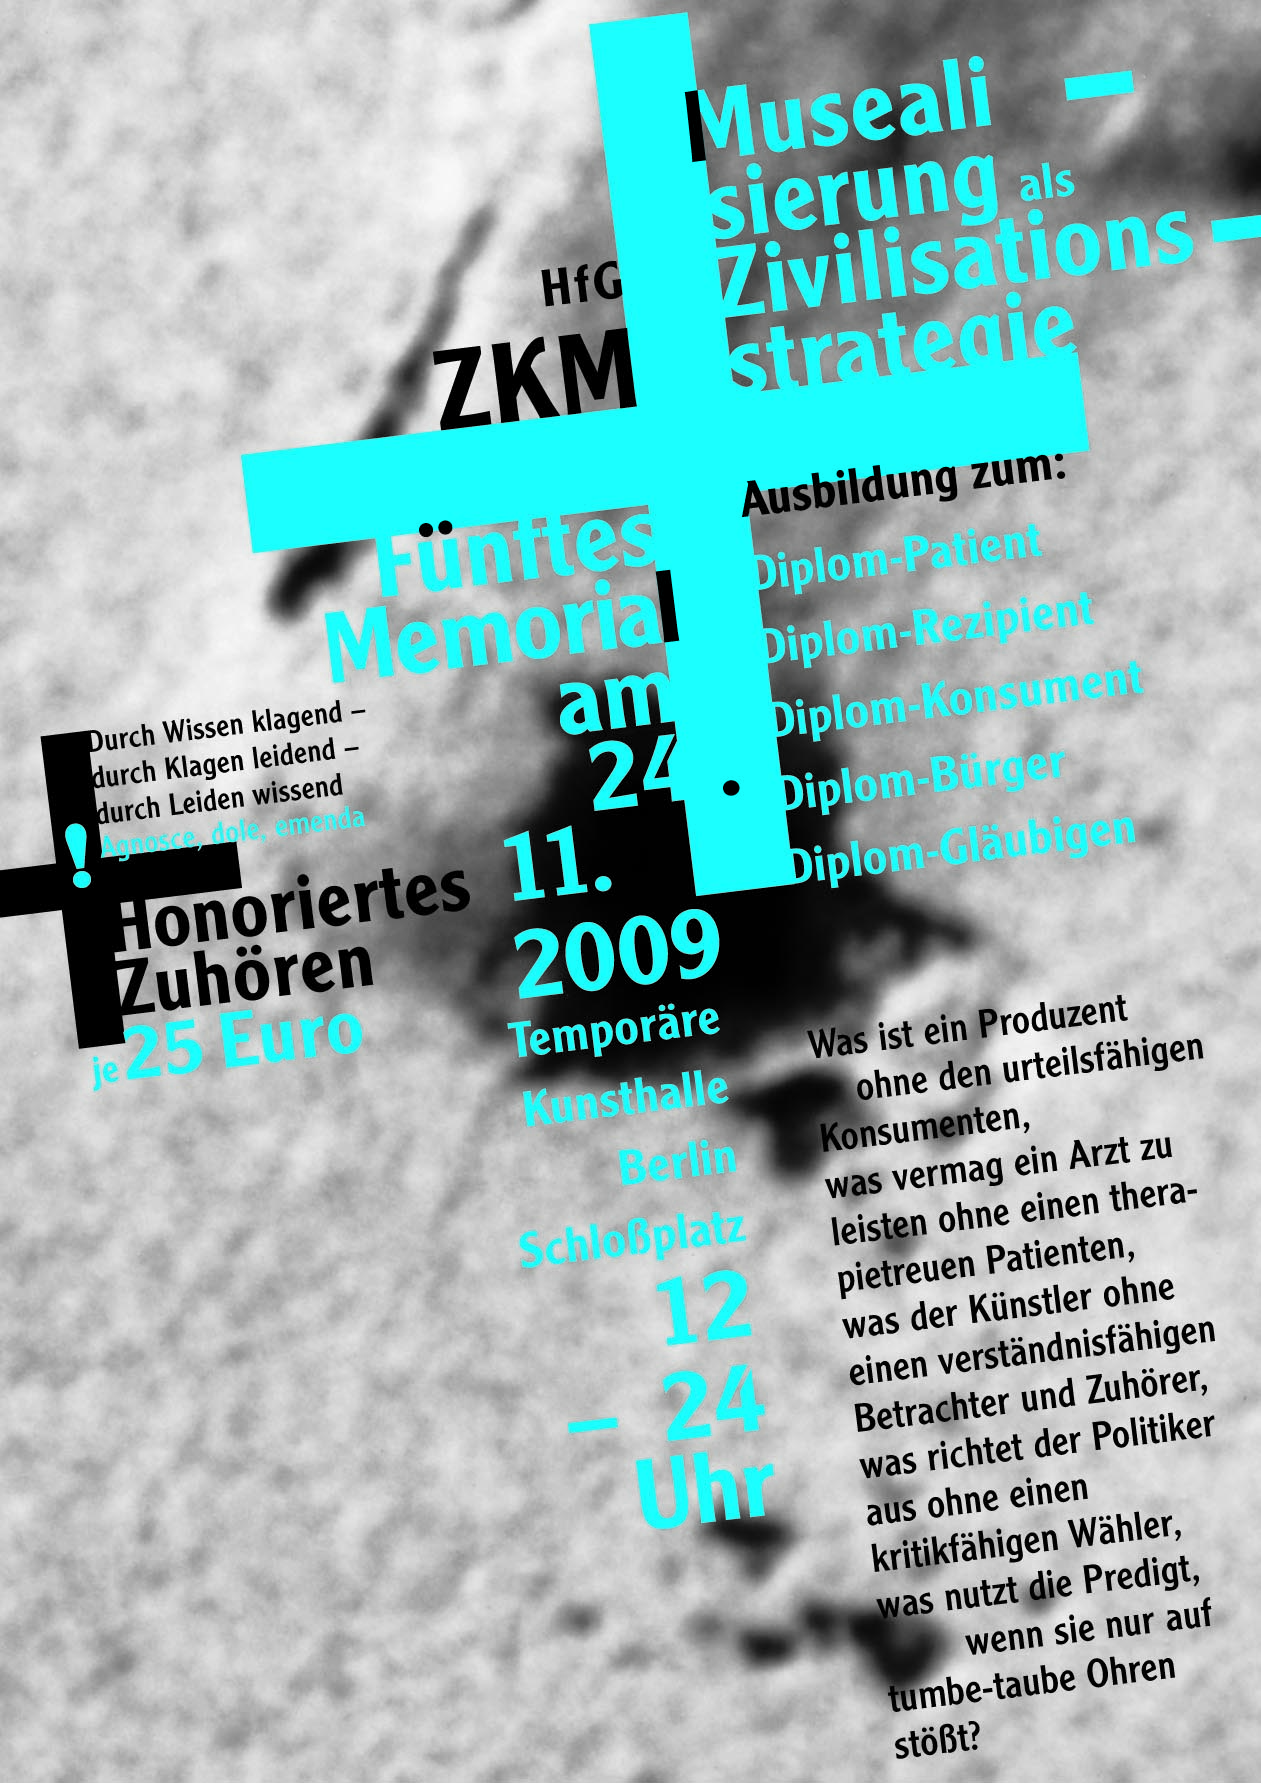 Honoriertes Zuhören, Bild: Musealisierung als Zivilisationsstrategie / Fünftes Memorial am 24.11.2009, Temporäre Kunsthalle Berlin.